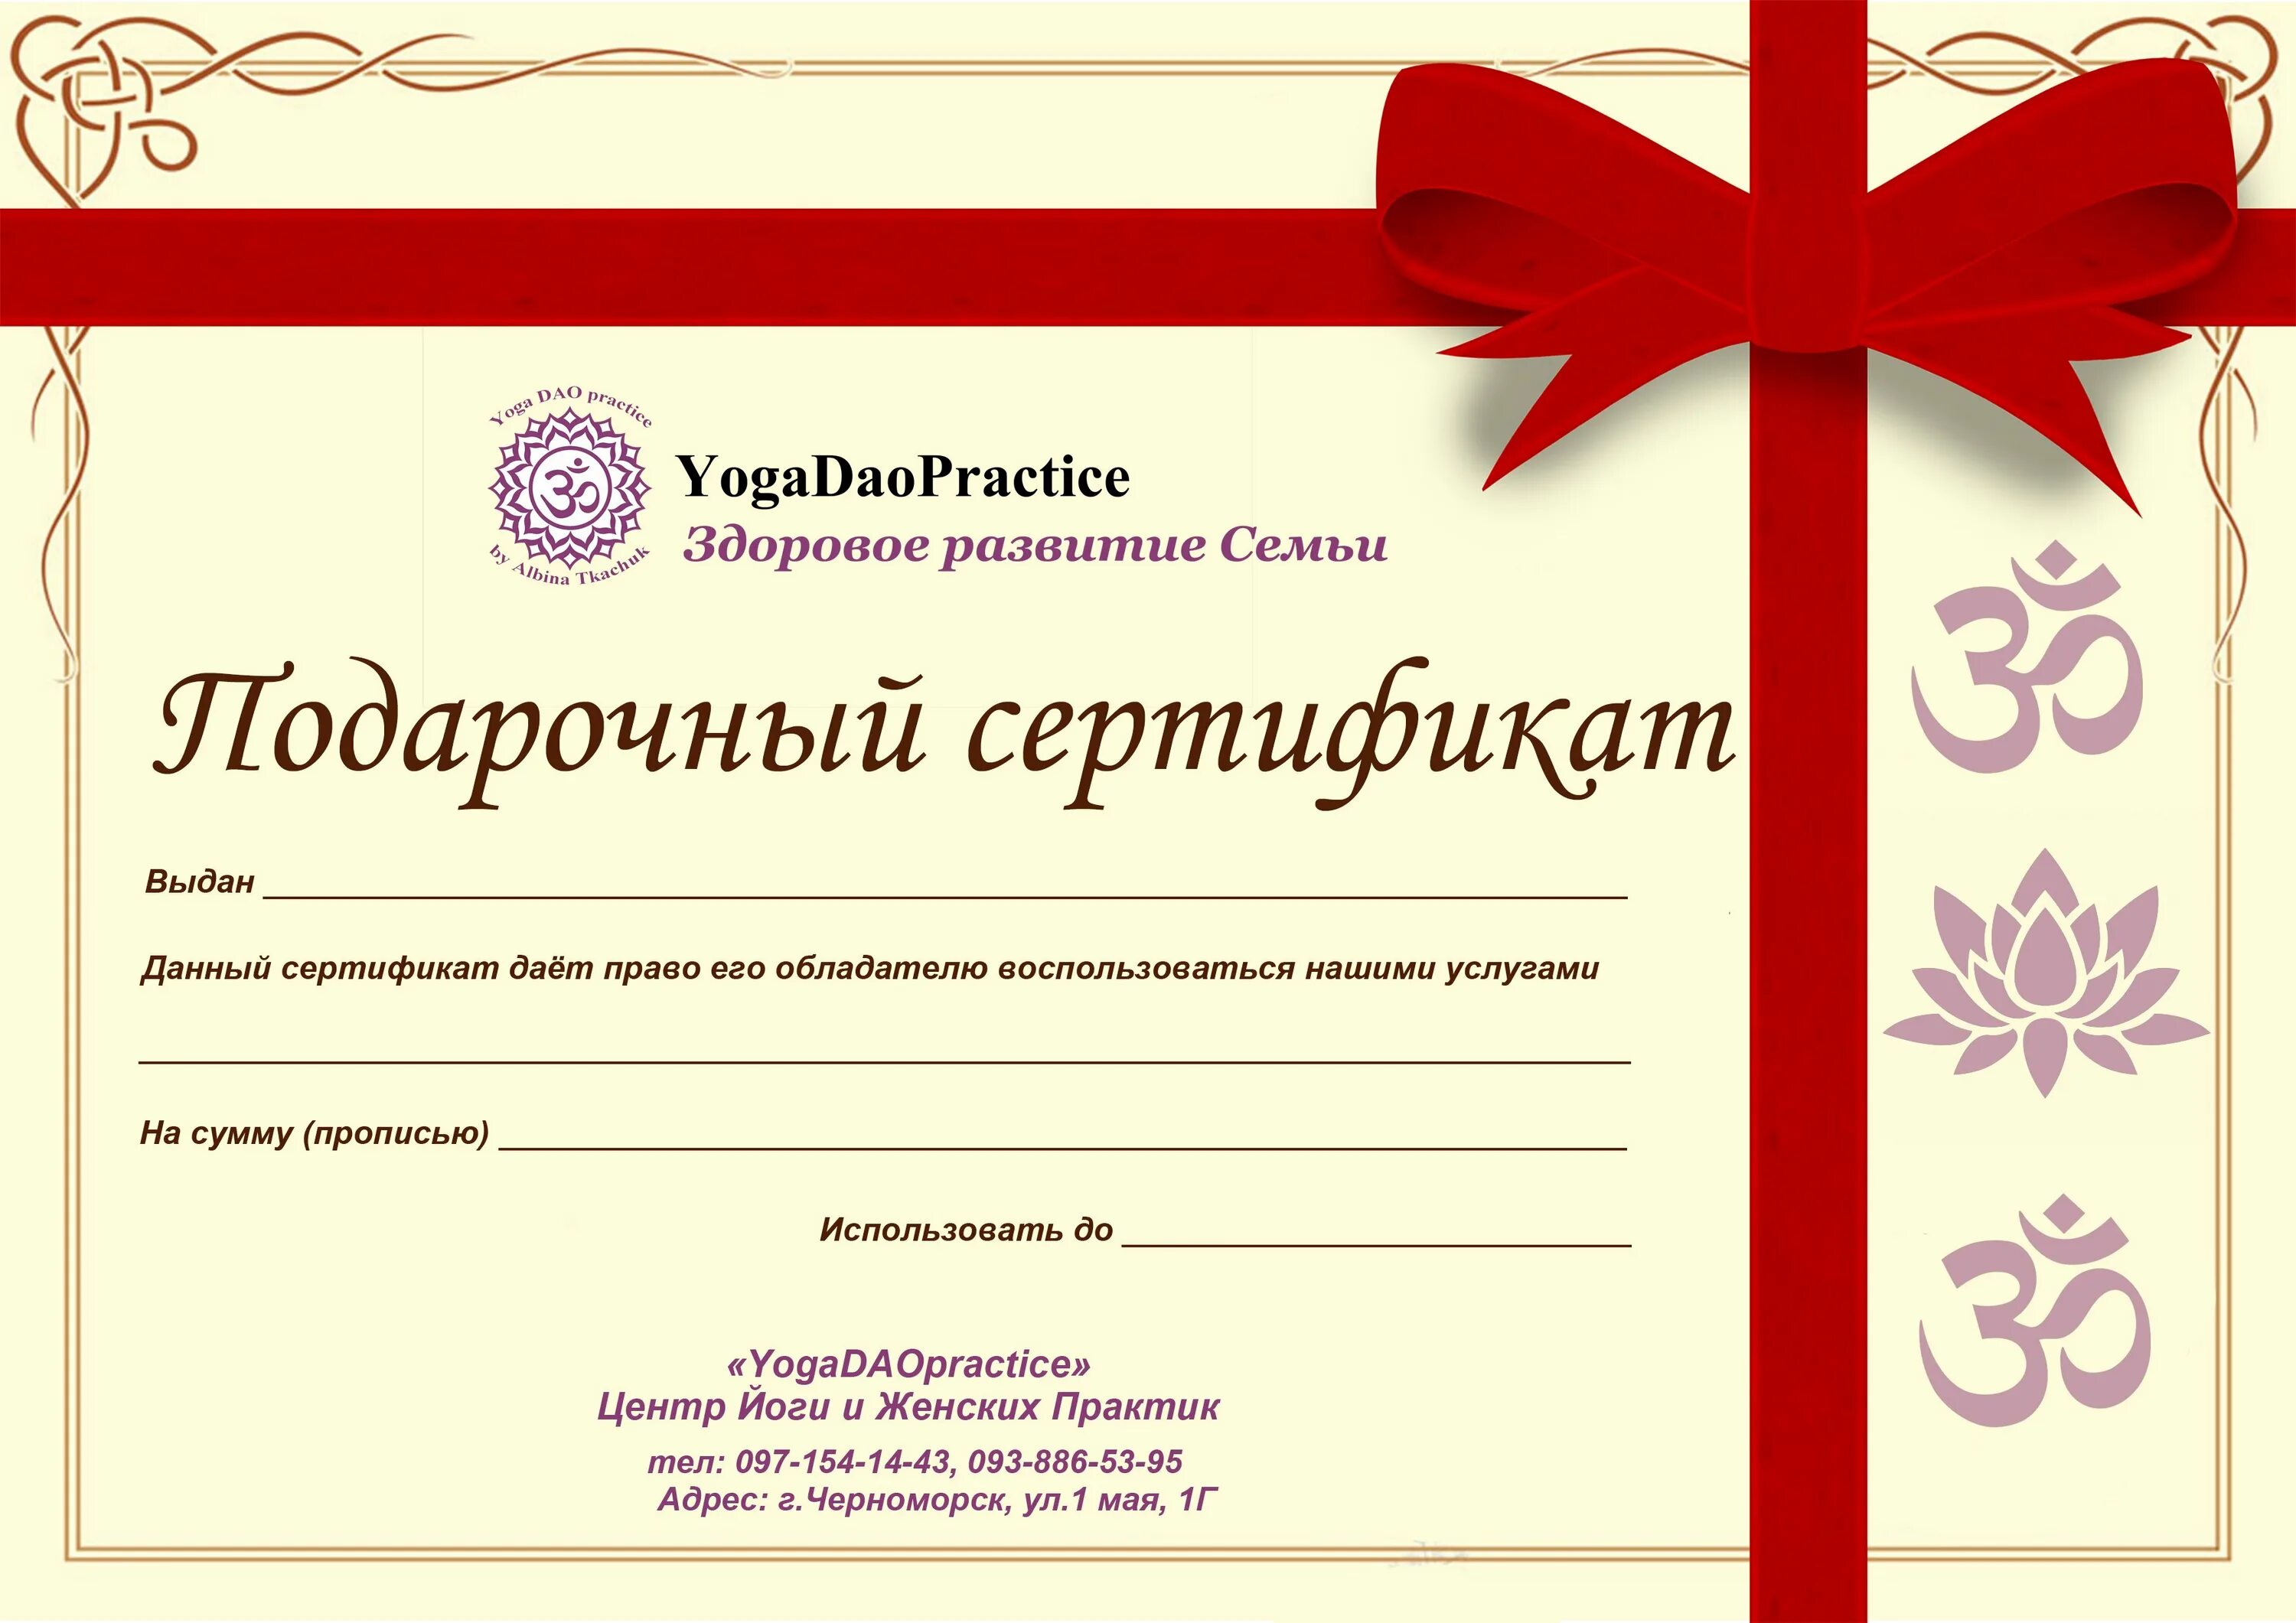 Подарочный сертификат красноярск женщине. Подарочный сертификат образец. Подарочный сертификат шаблон. Обросцыподарочных сертификатов. Подарочный сертификат макет.